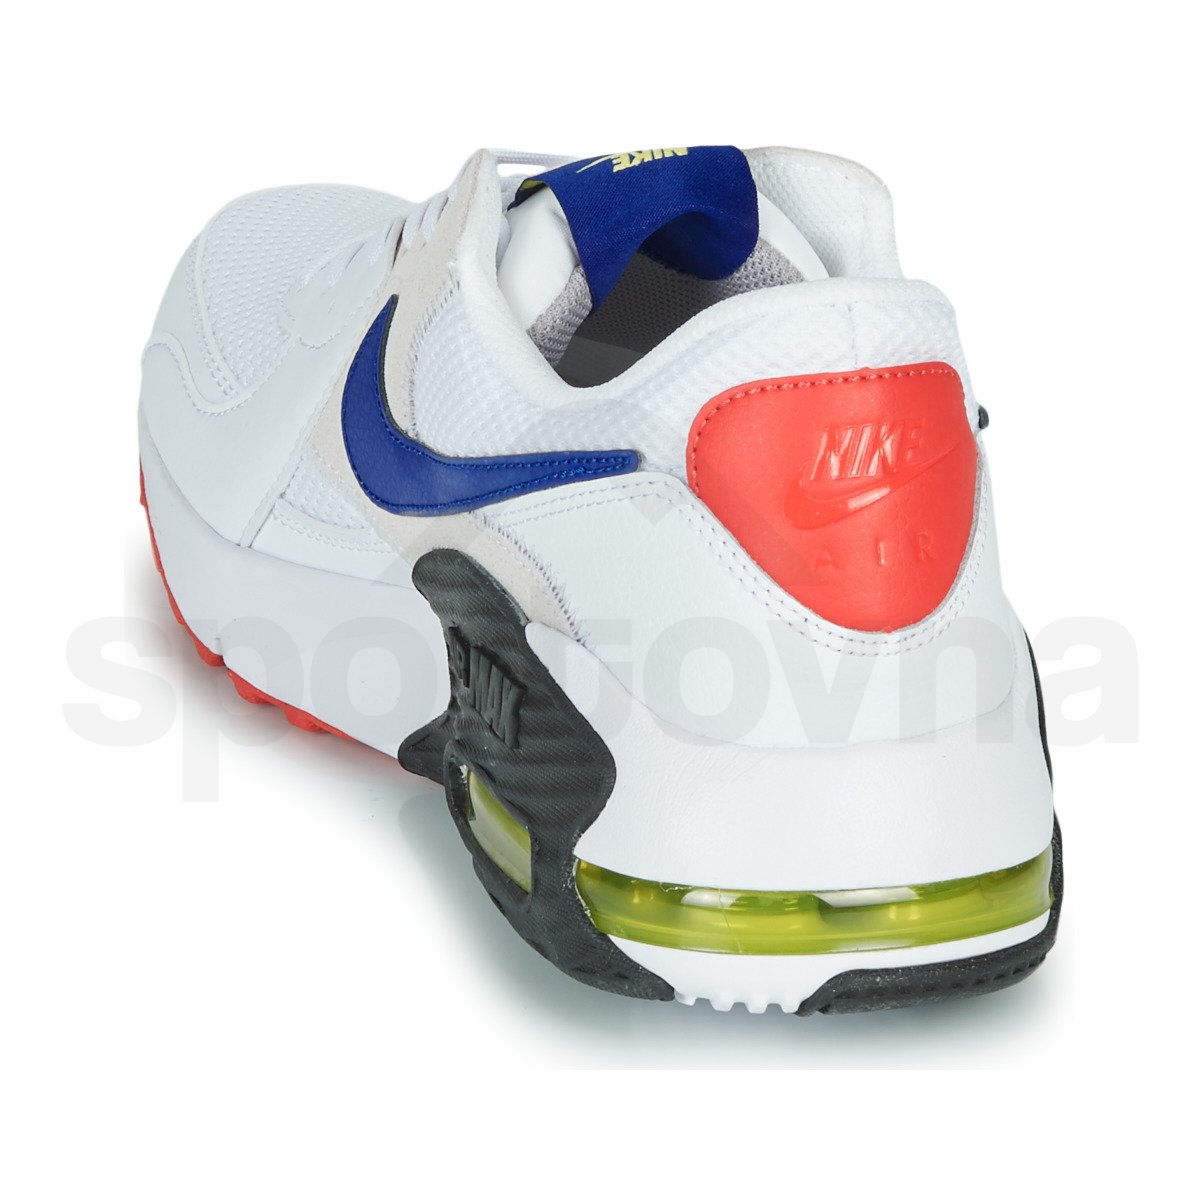 Tenisky Nike Air Max Excee - bílá/modrá/černá